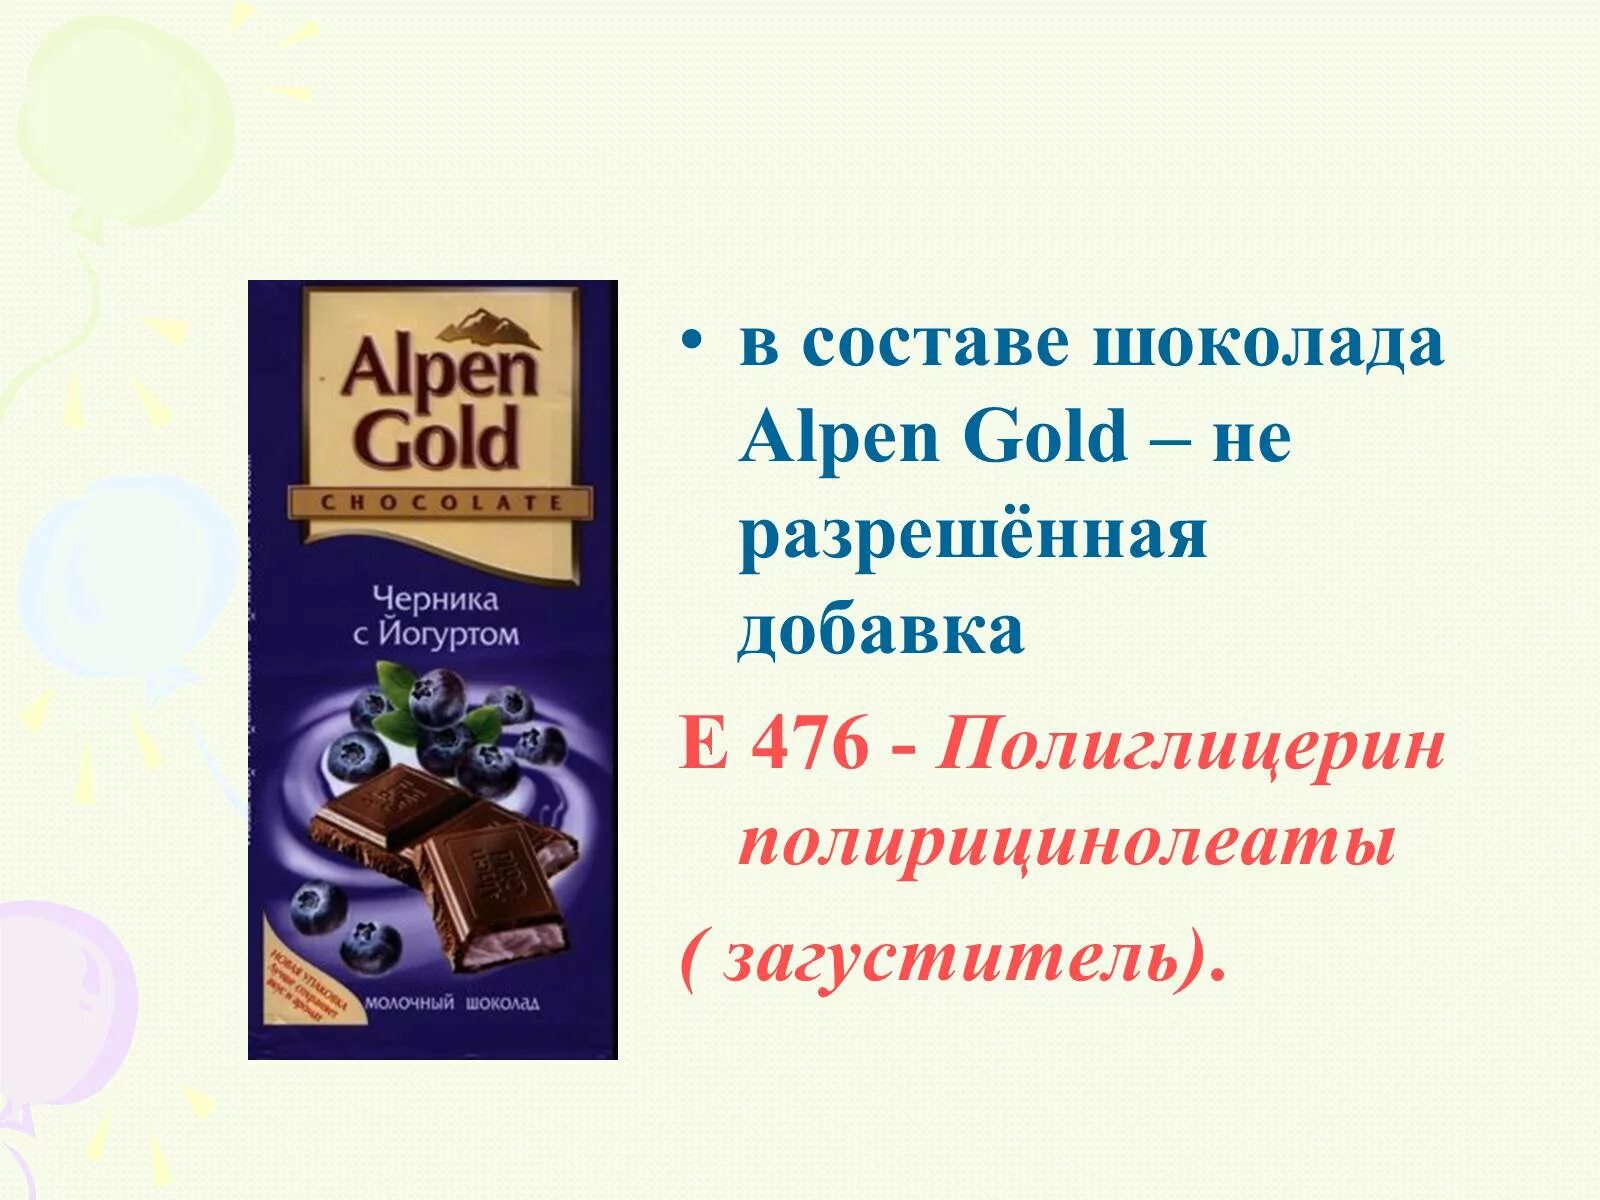 Добавки в шоколад. Alpen Gold шоколад e476. Шоколад Альпен Гольде добавки. Пищевые добавки шоколада Альпен Голд шоколадный. Добавки в шоколаде Альпен Гольд.